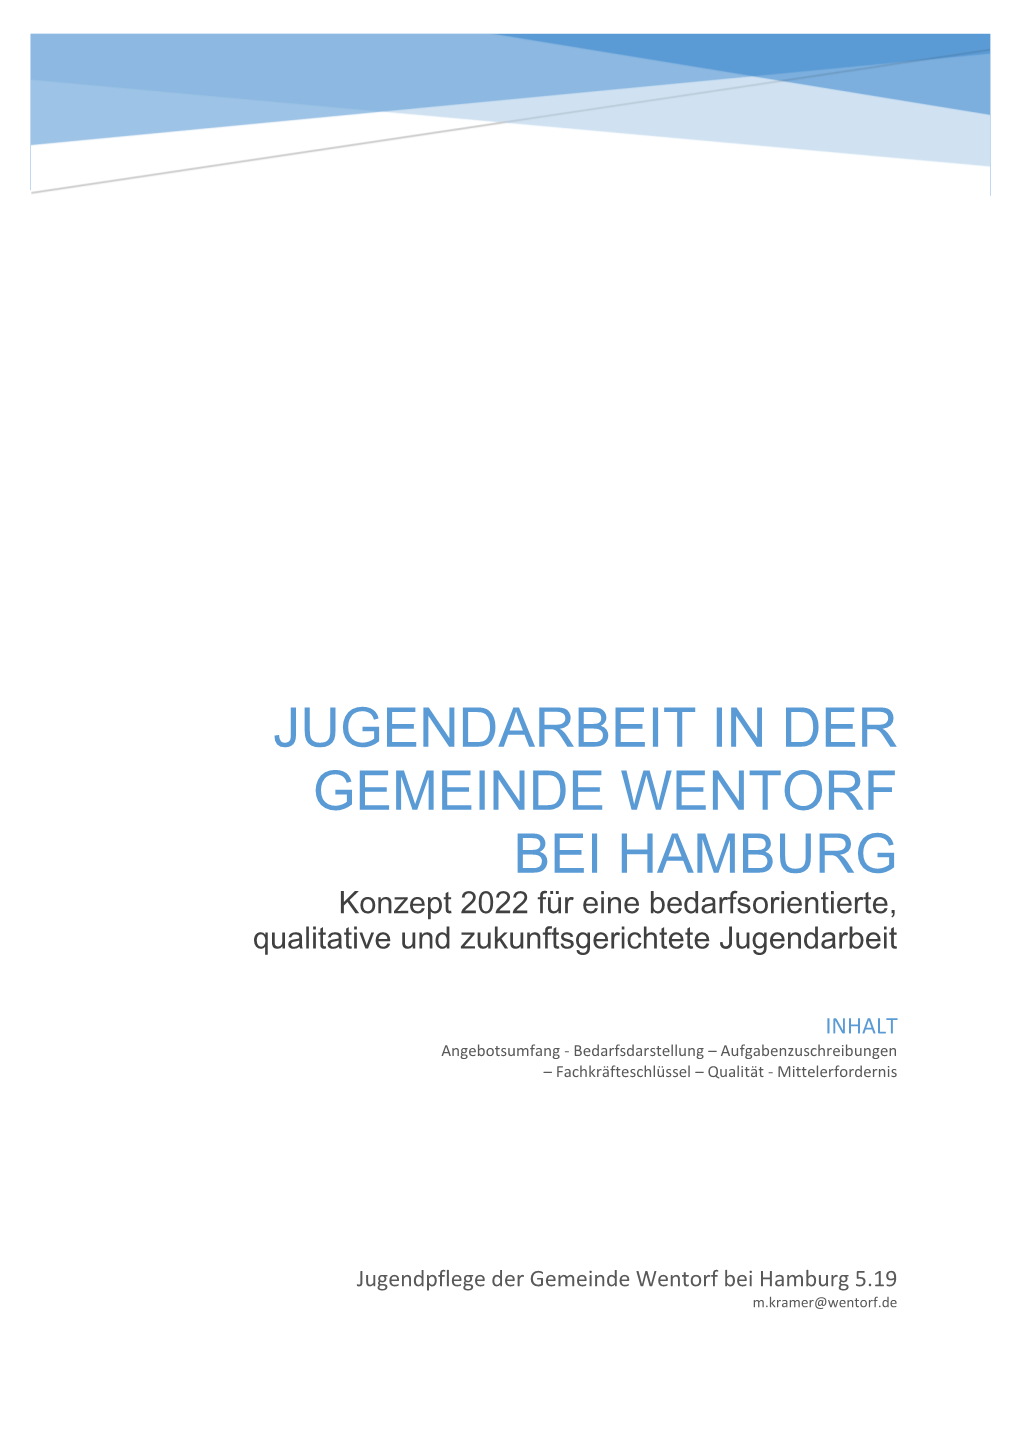 JUGENDARBEIT in DER GEMEINDE WENTORF BEI HAMBURG Konzept 2022 Für Eine Bedarfsorientierte, Qualitative Und Zukunftsgerichtete Jugendarbeit